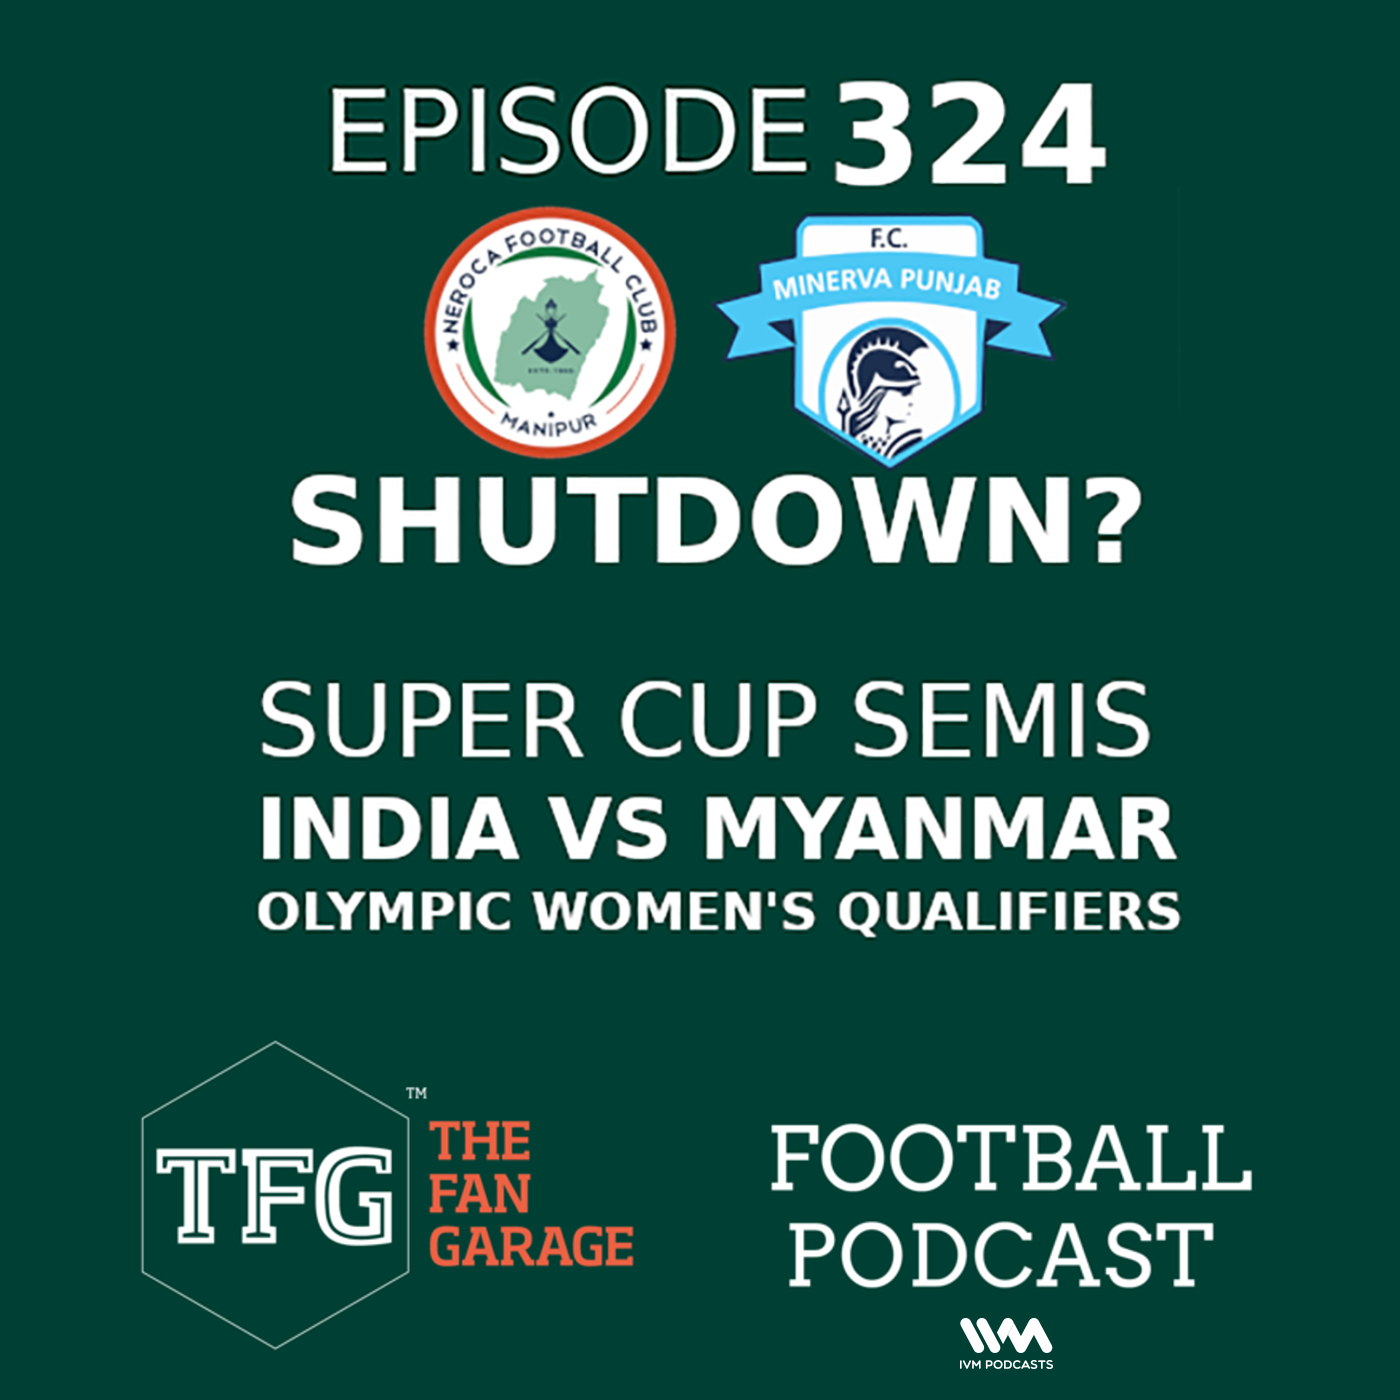 TFG Indian Football Ep. 324: Neroca, Minerva Punjab shutdown? + India vs Myanmar Preview, Super Cup Semis